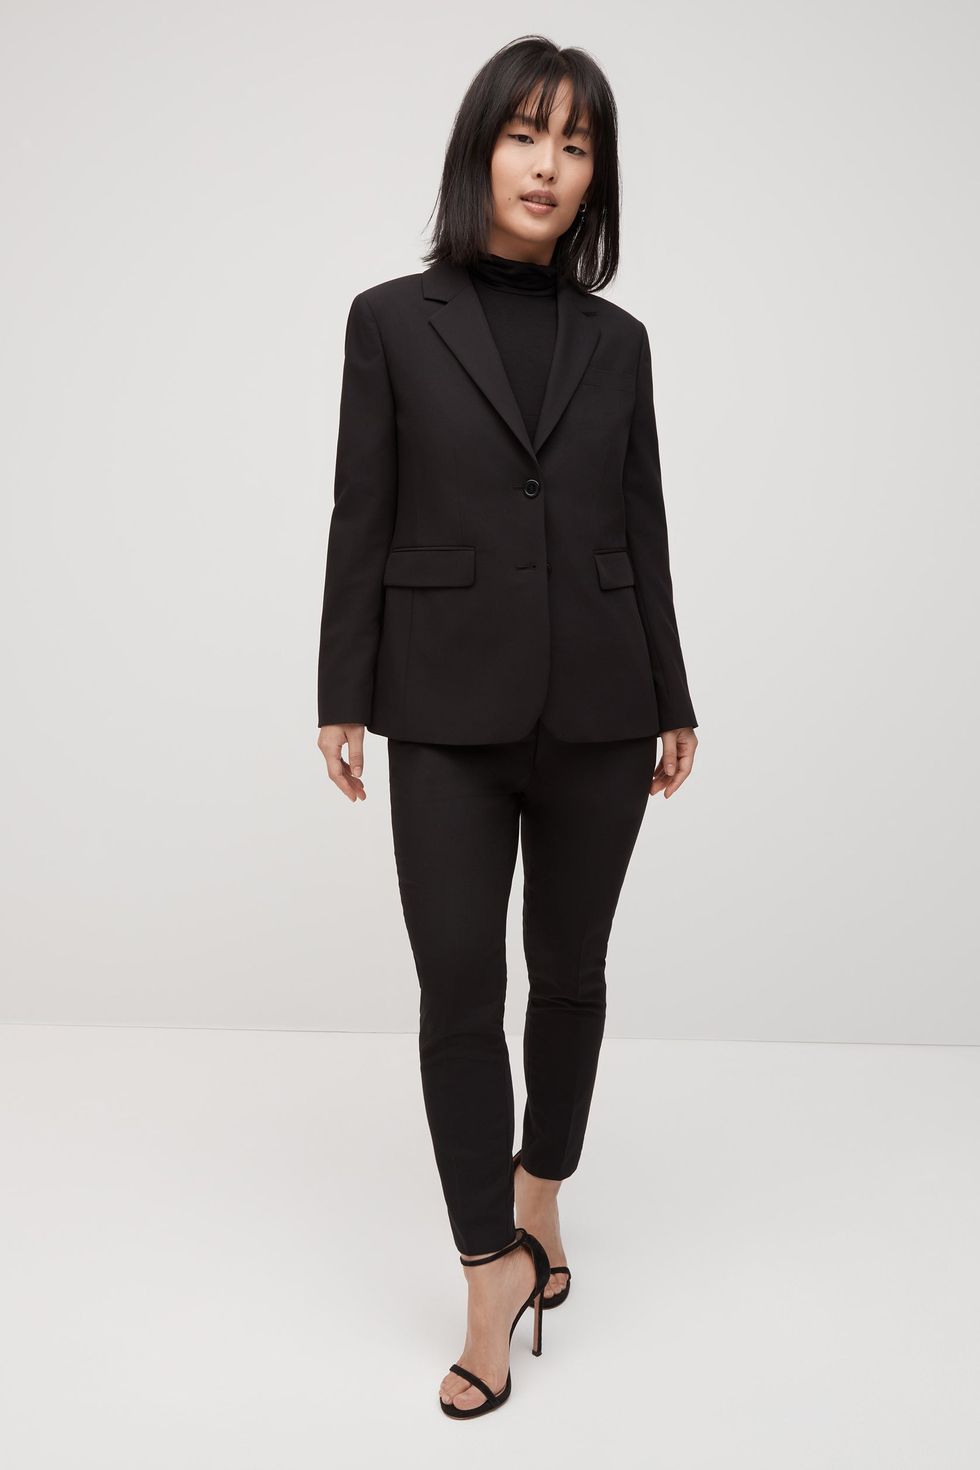 Black Pantsuit for Women, Black Formal Suit Set for Women, Black Wedding  Guest Pantsuit for Women, Blazer Trouser Suit for Women 